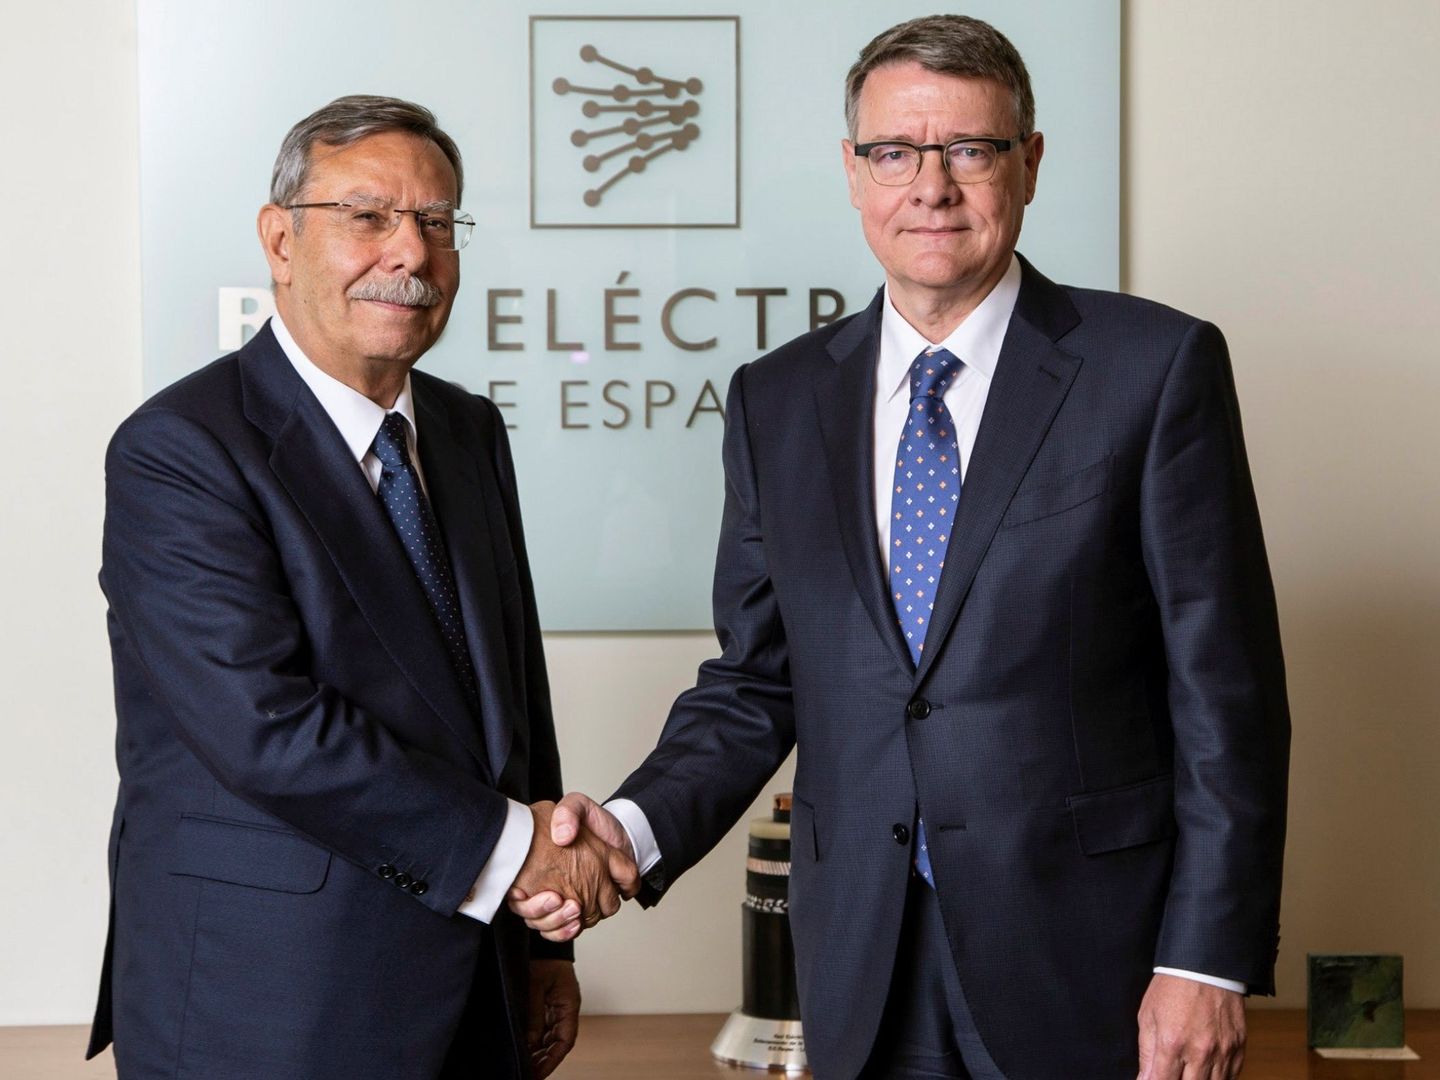 Fotografía facilitada por Red Eléctrica, del expresidente de la compañía, José Folgado (i), junto a su sucesor en el cargo, Jordi Sevilla (d)